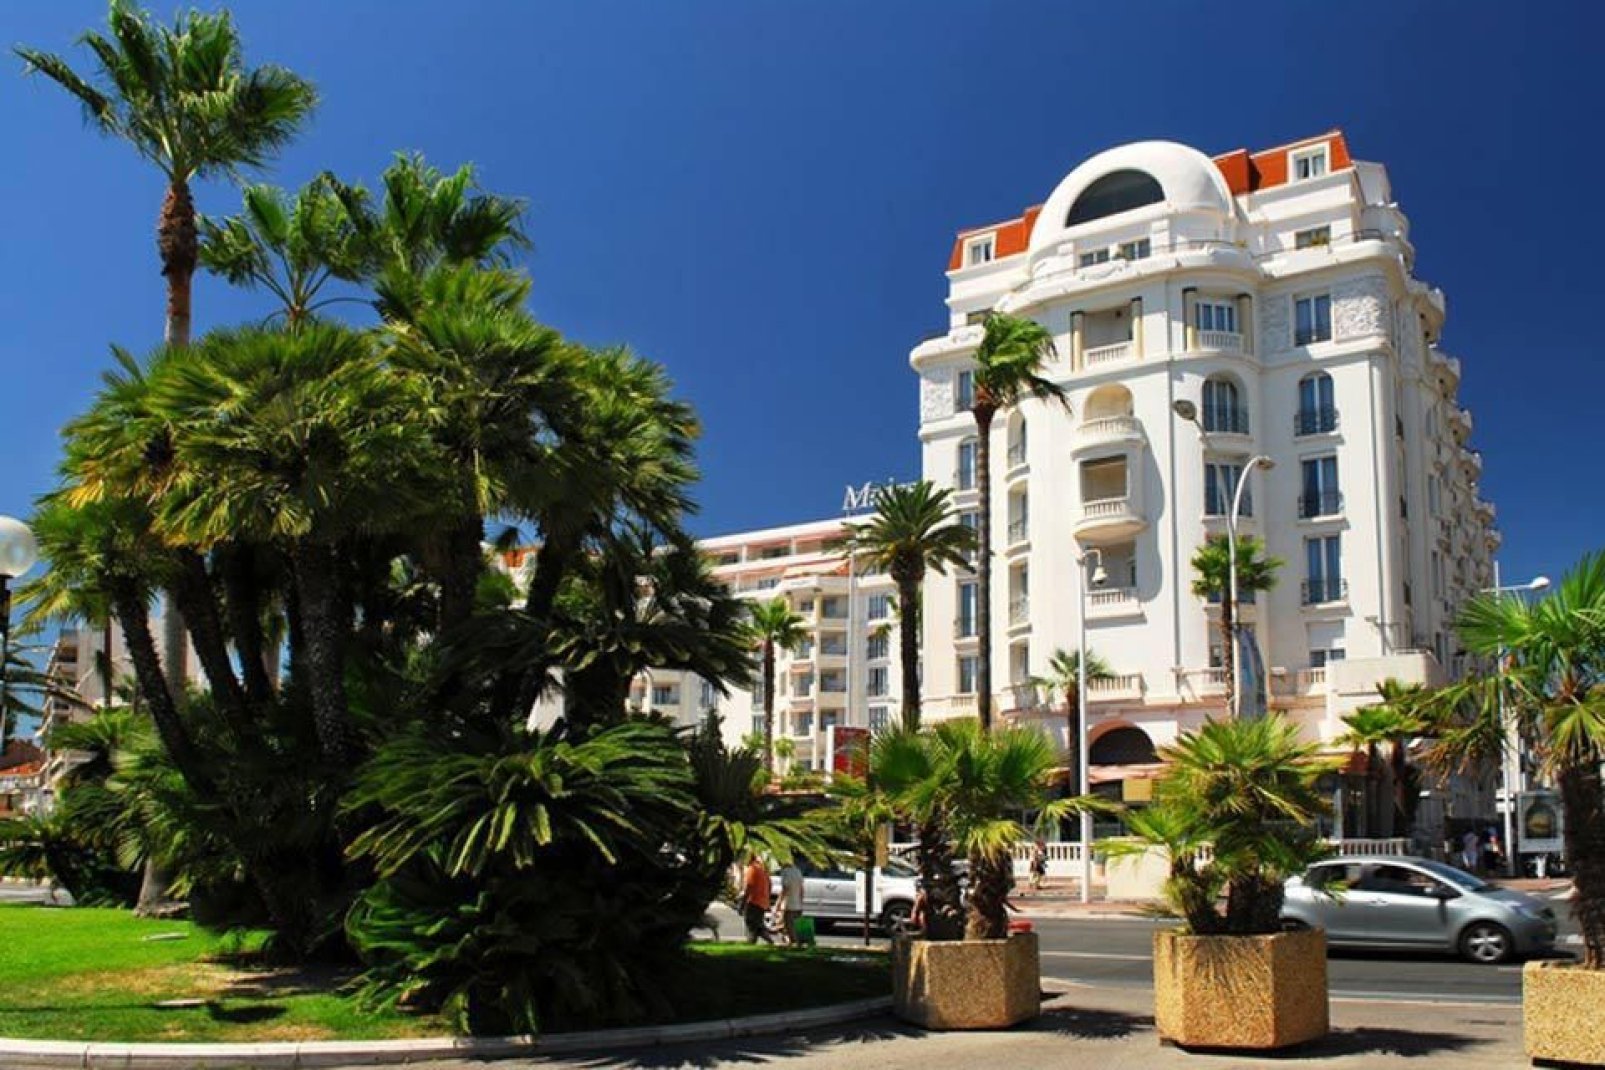 Nota per il suo prestigio e la sua ricchezza, Cannes è una città meno superficiale di quanto potrebbe sembrare a prima vista.